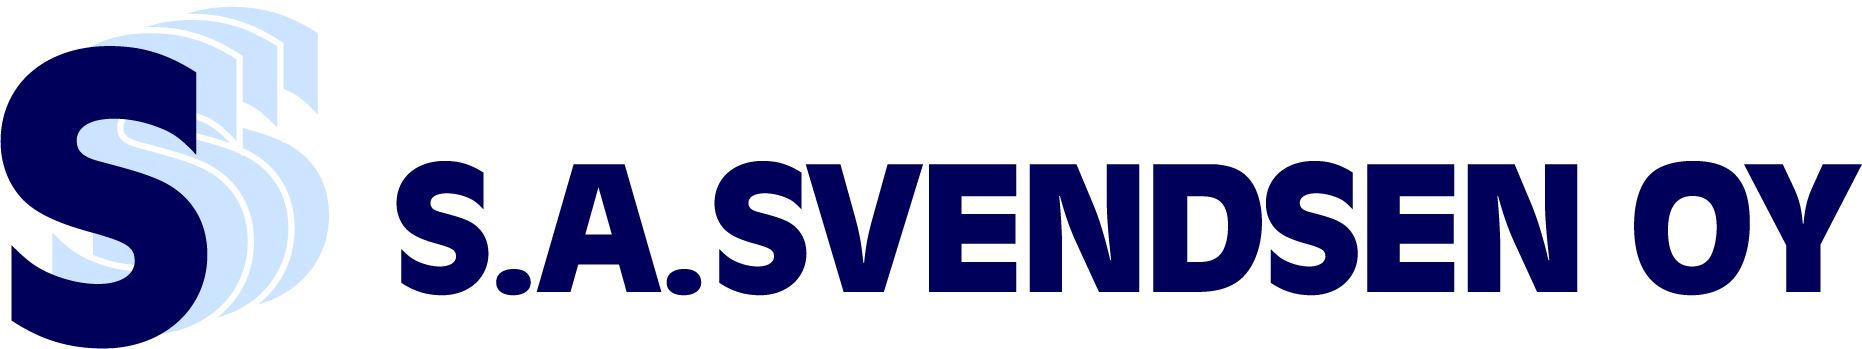 S.A. Svendsen Oy